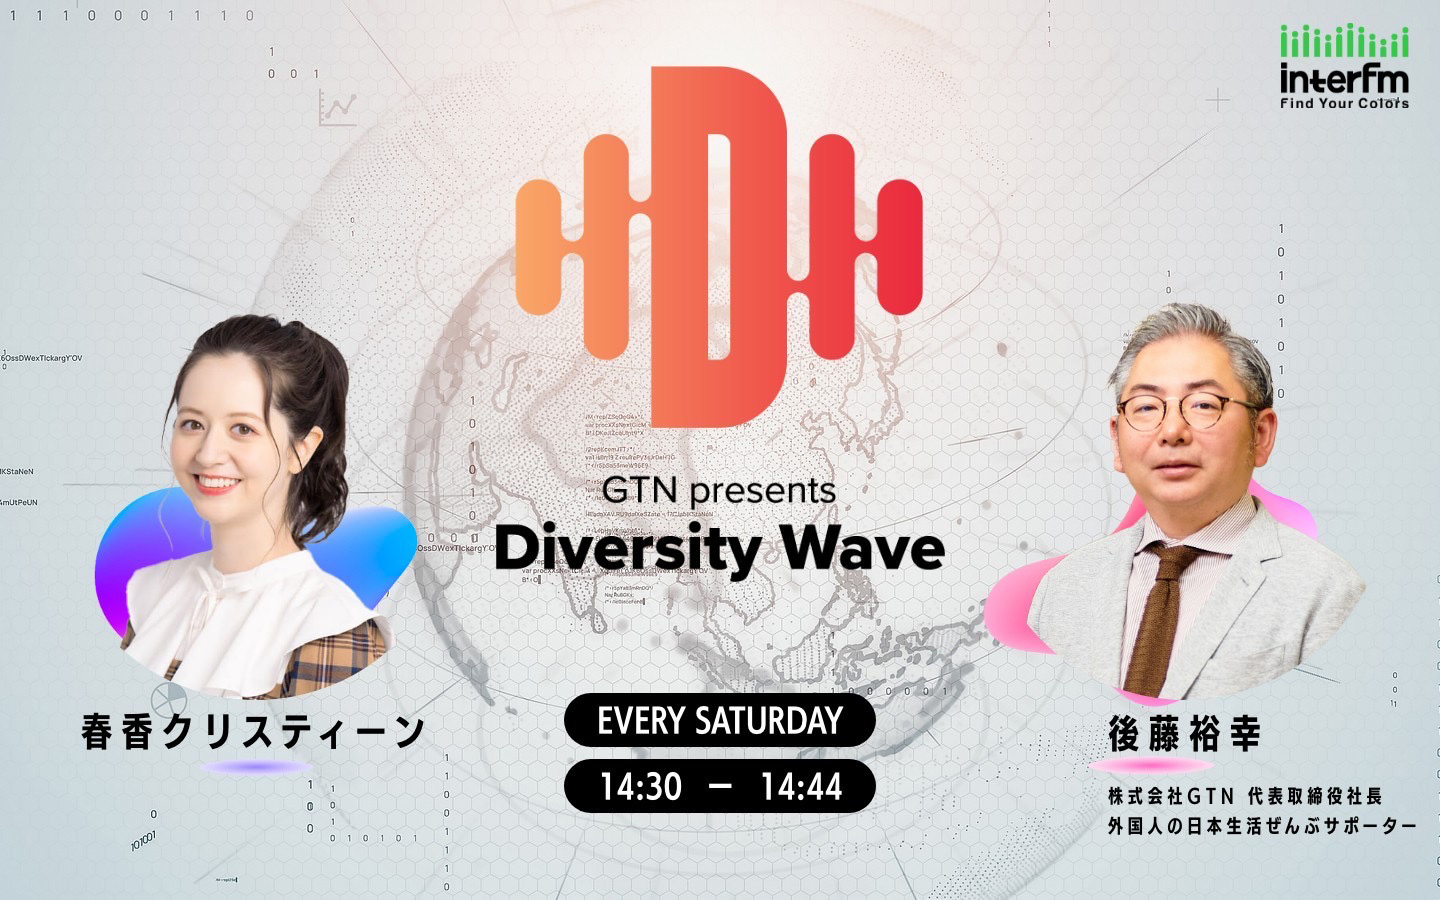 GTN presents Diversity Wave